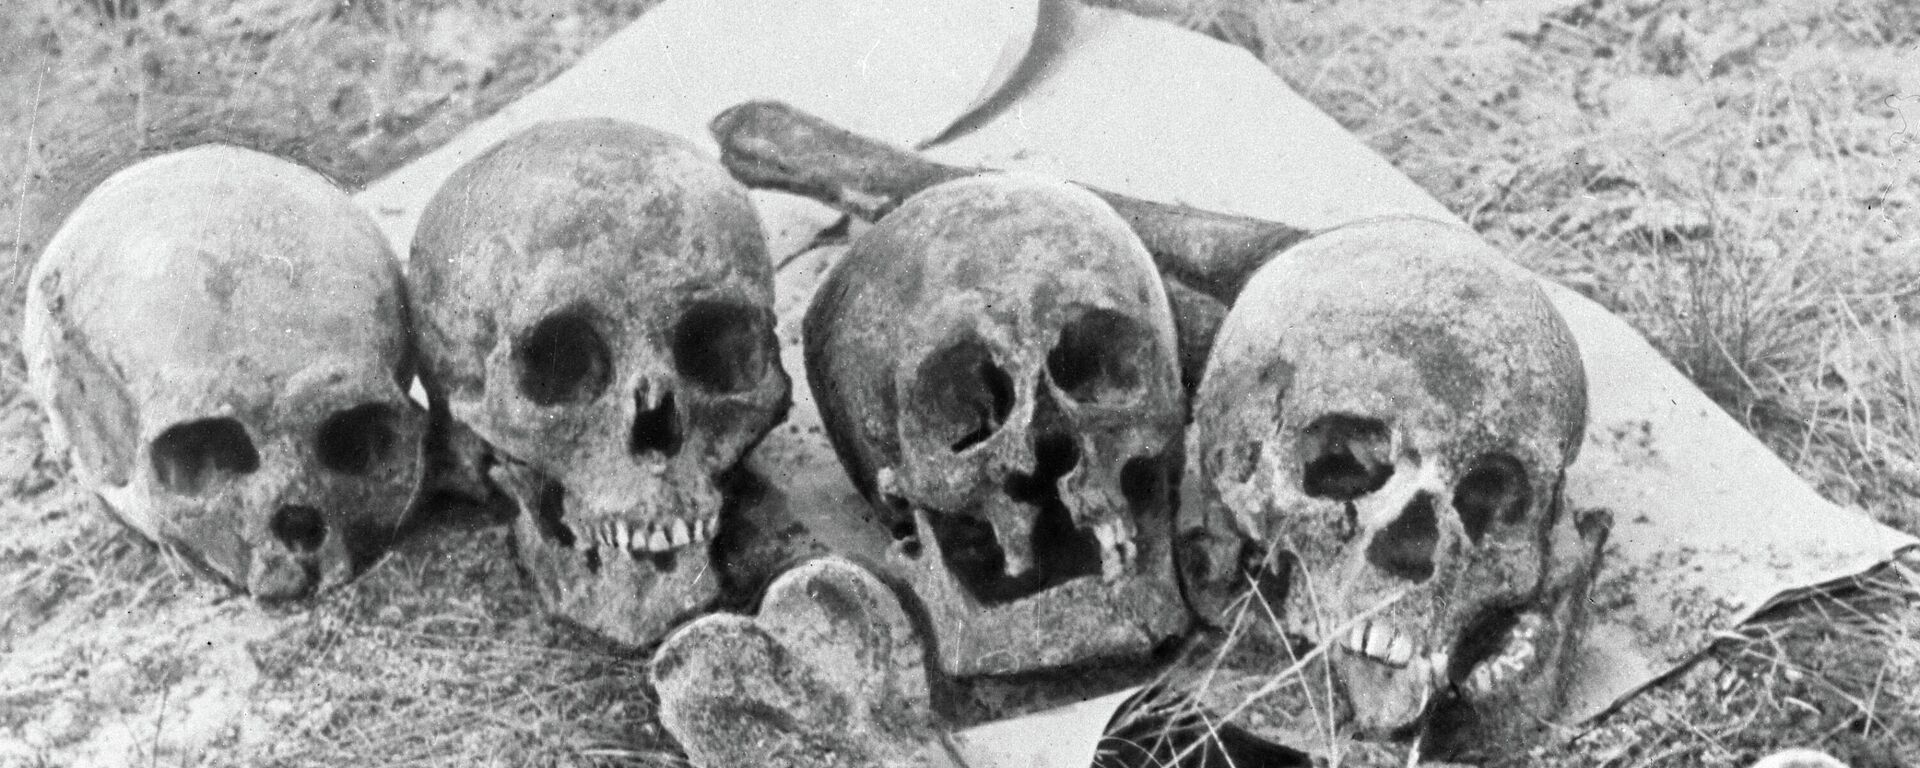 Черепа и кости жертв нацистов и их эстонских пособников - Sputnik Latvija, 1920, 26.06.2021